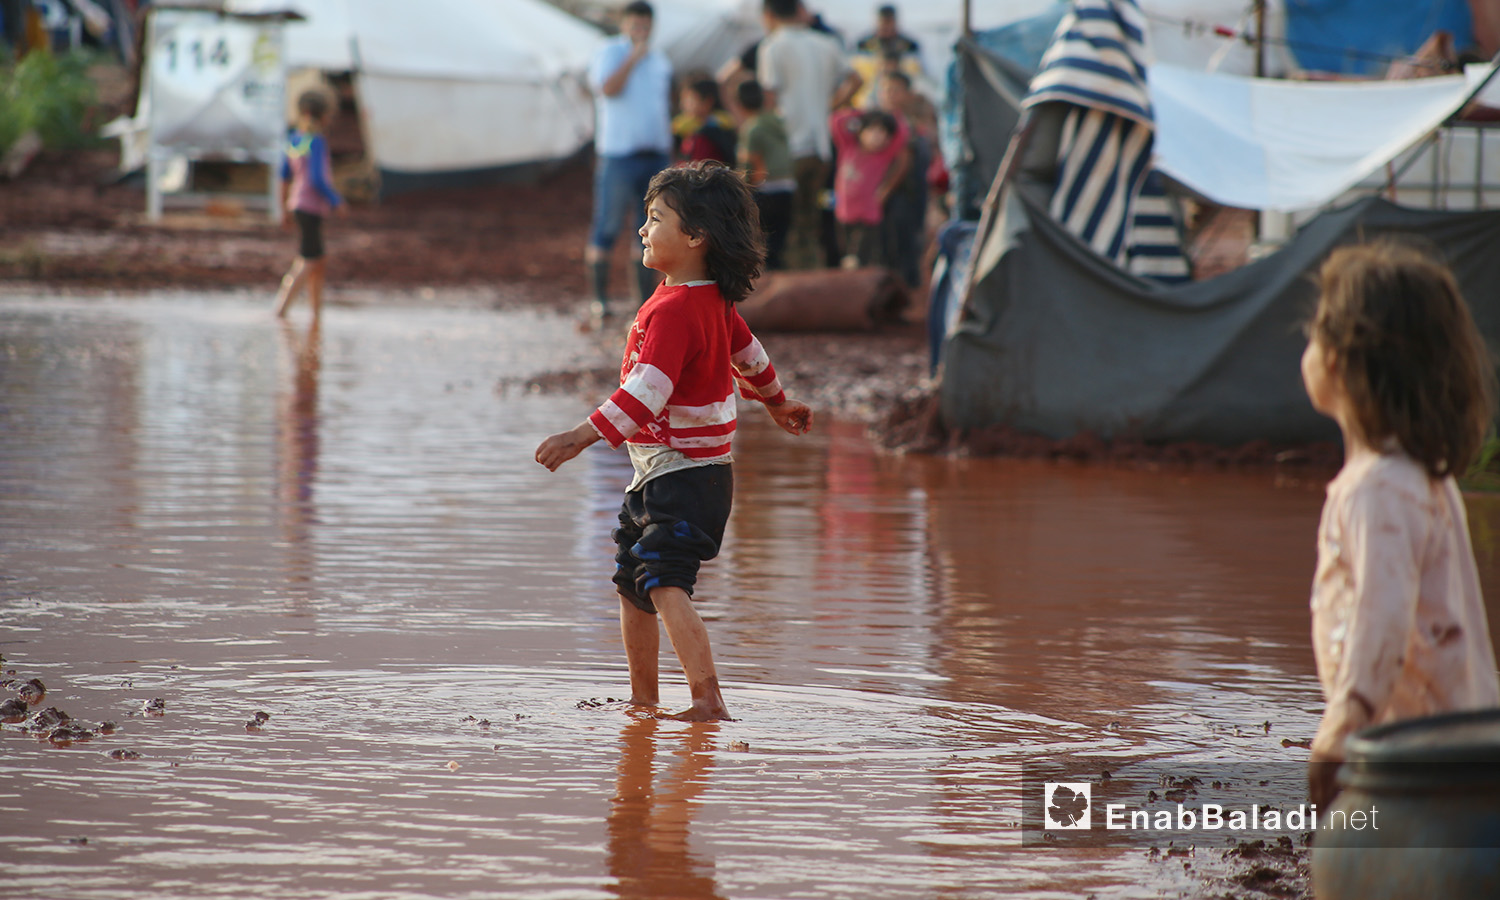 طفلة تغمر قدماها المياه بعد العاصفة المطرية التي ضربت مخيم "سهل الخير" في كفربني بريف إدلب الشمالي - 19 حزيران 2020 (عنب بلدي/يوسف غريبي)